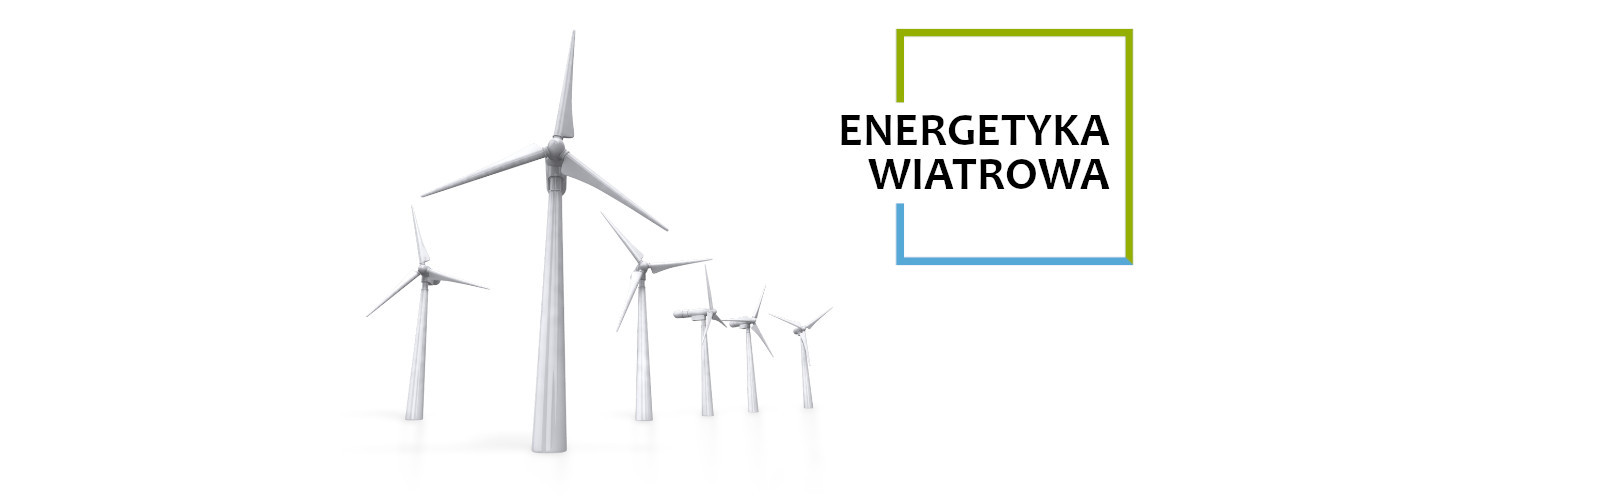 Energetyka wiatrowa w technologii WestWind